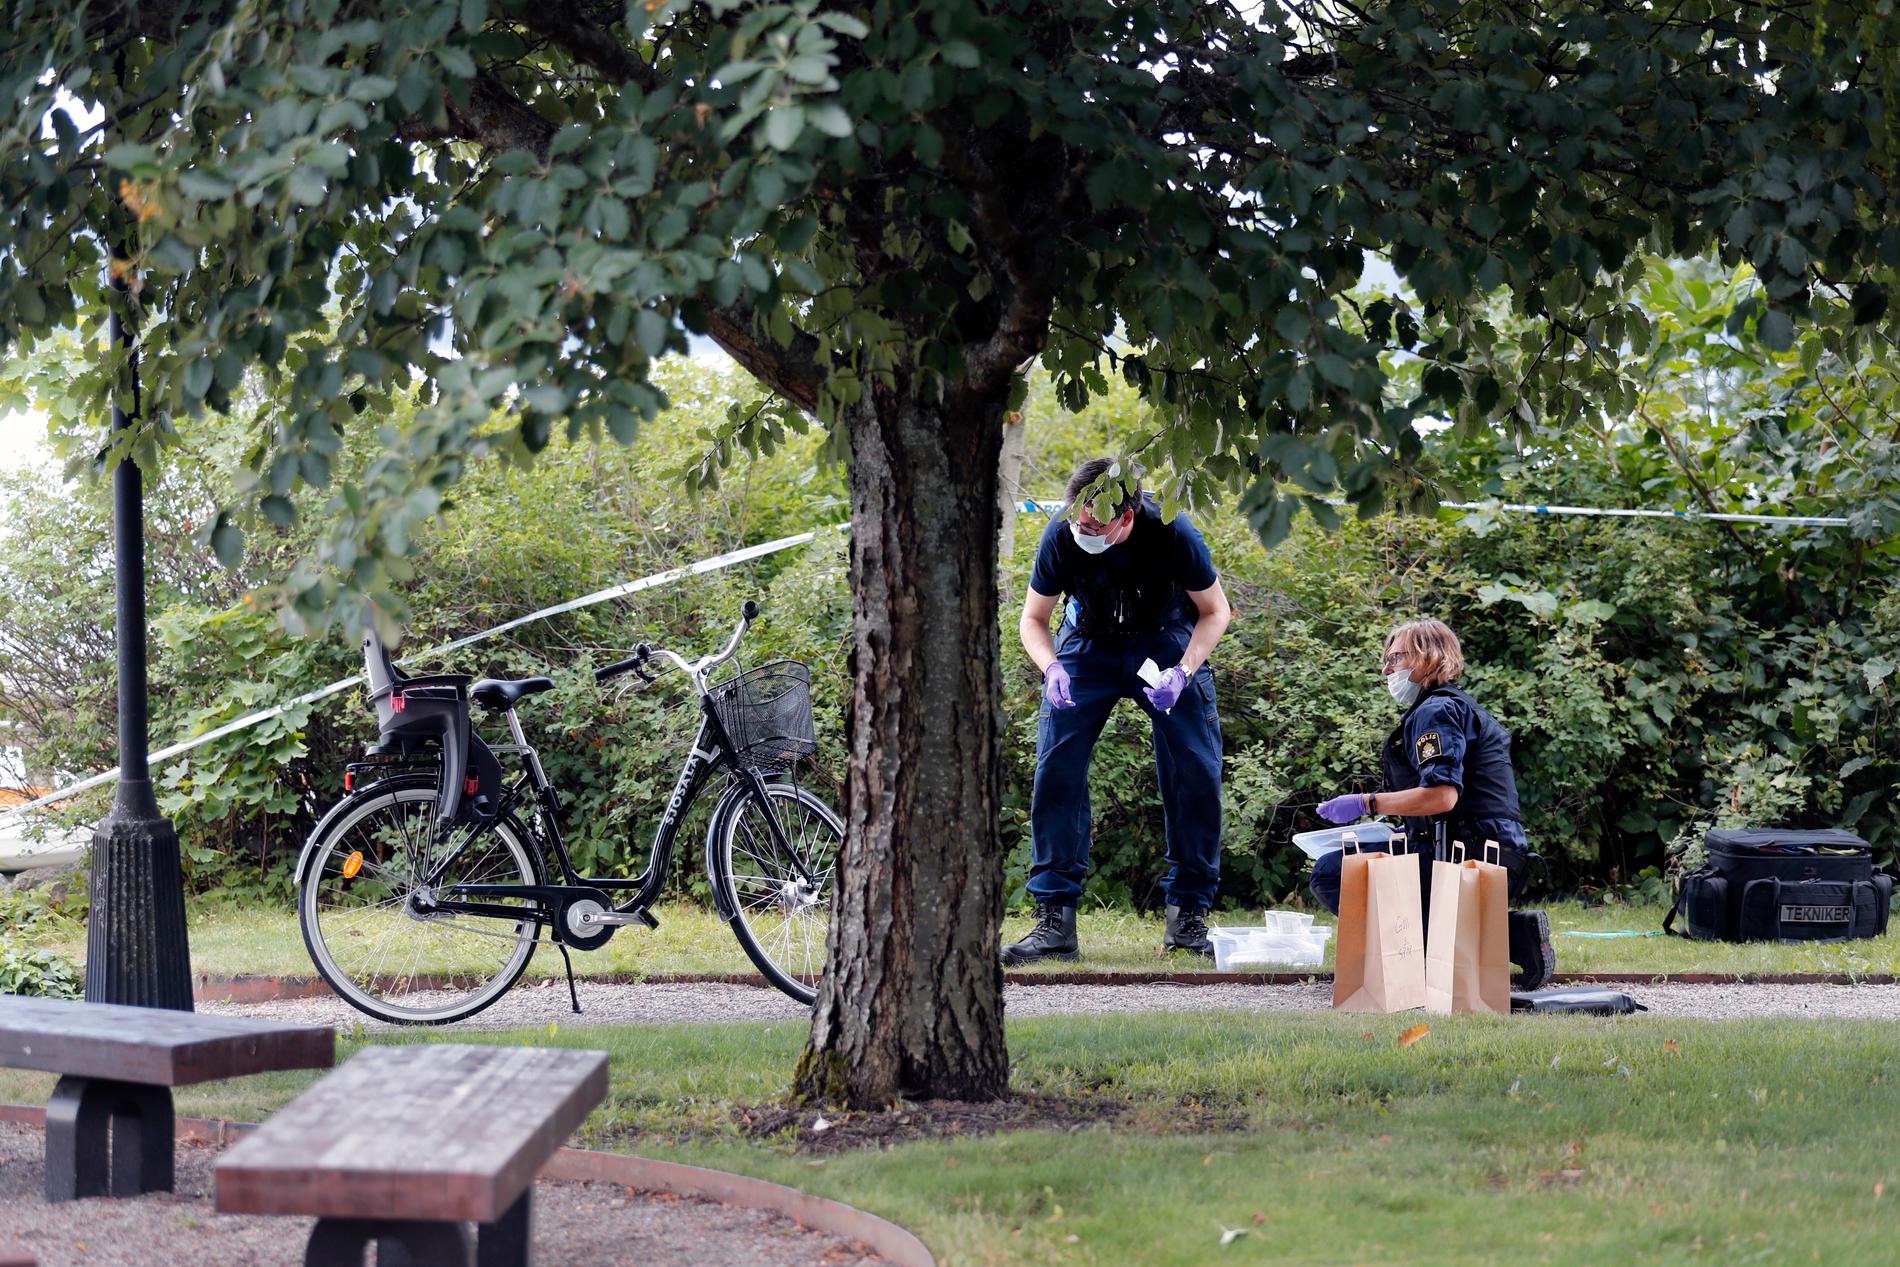 Domkyrkan i Strängnäs har utsatts för en stöld av föremål till ett ”högt värde”, uppger polisen. Polisens tekniker intresserar sig för en cykel.